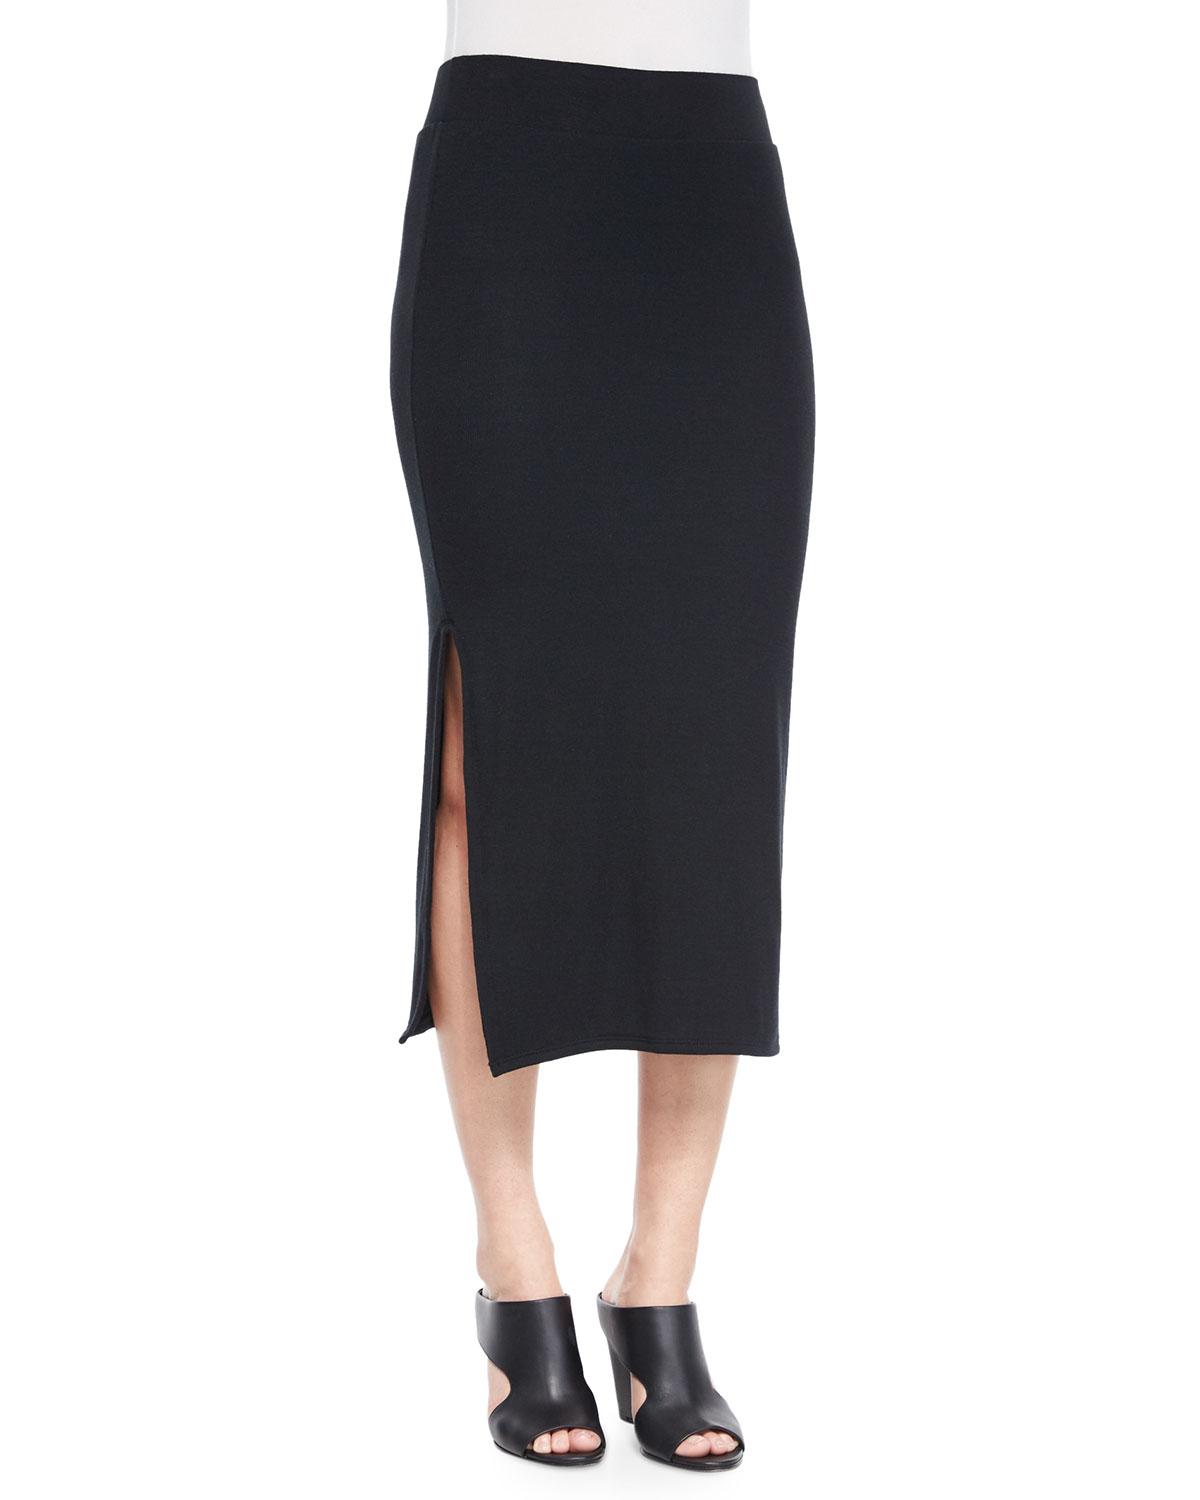 Atm Side-slit Knit Tube Skirt in Black | Lyst